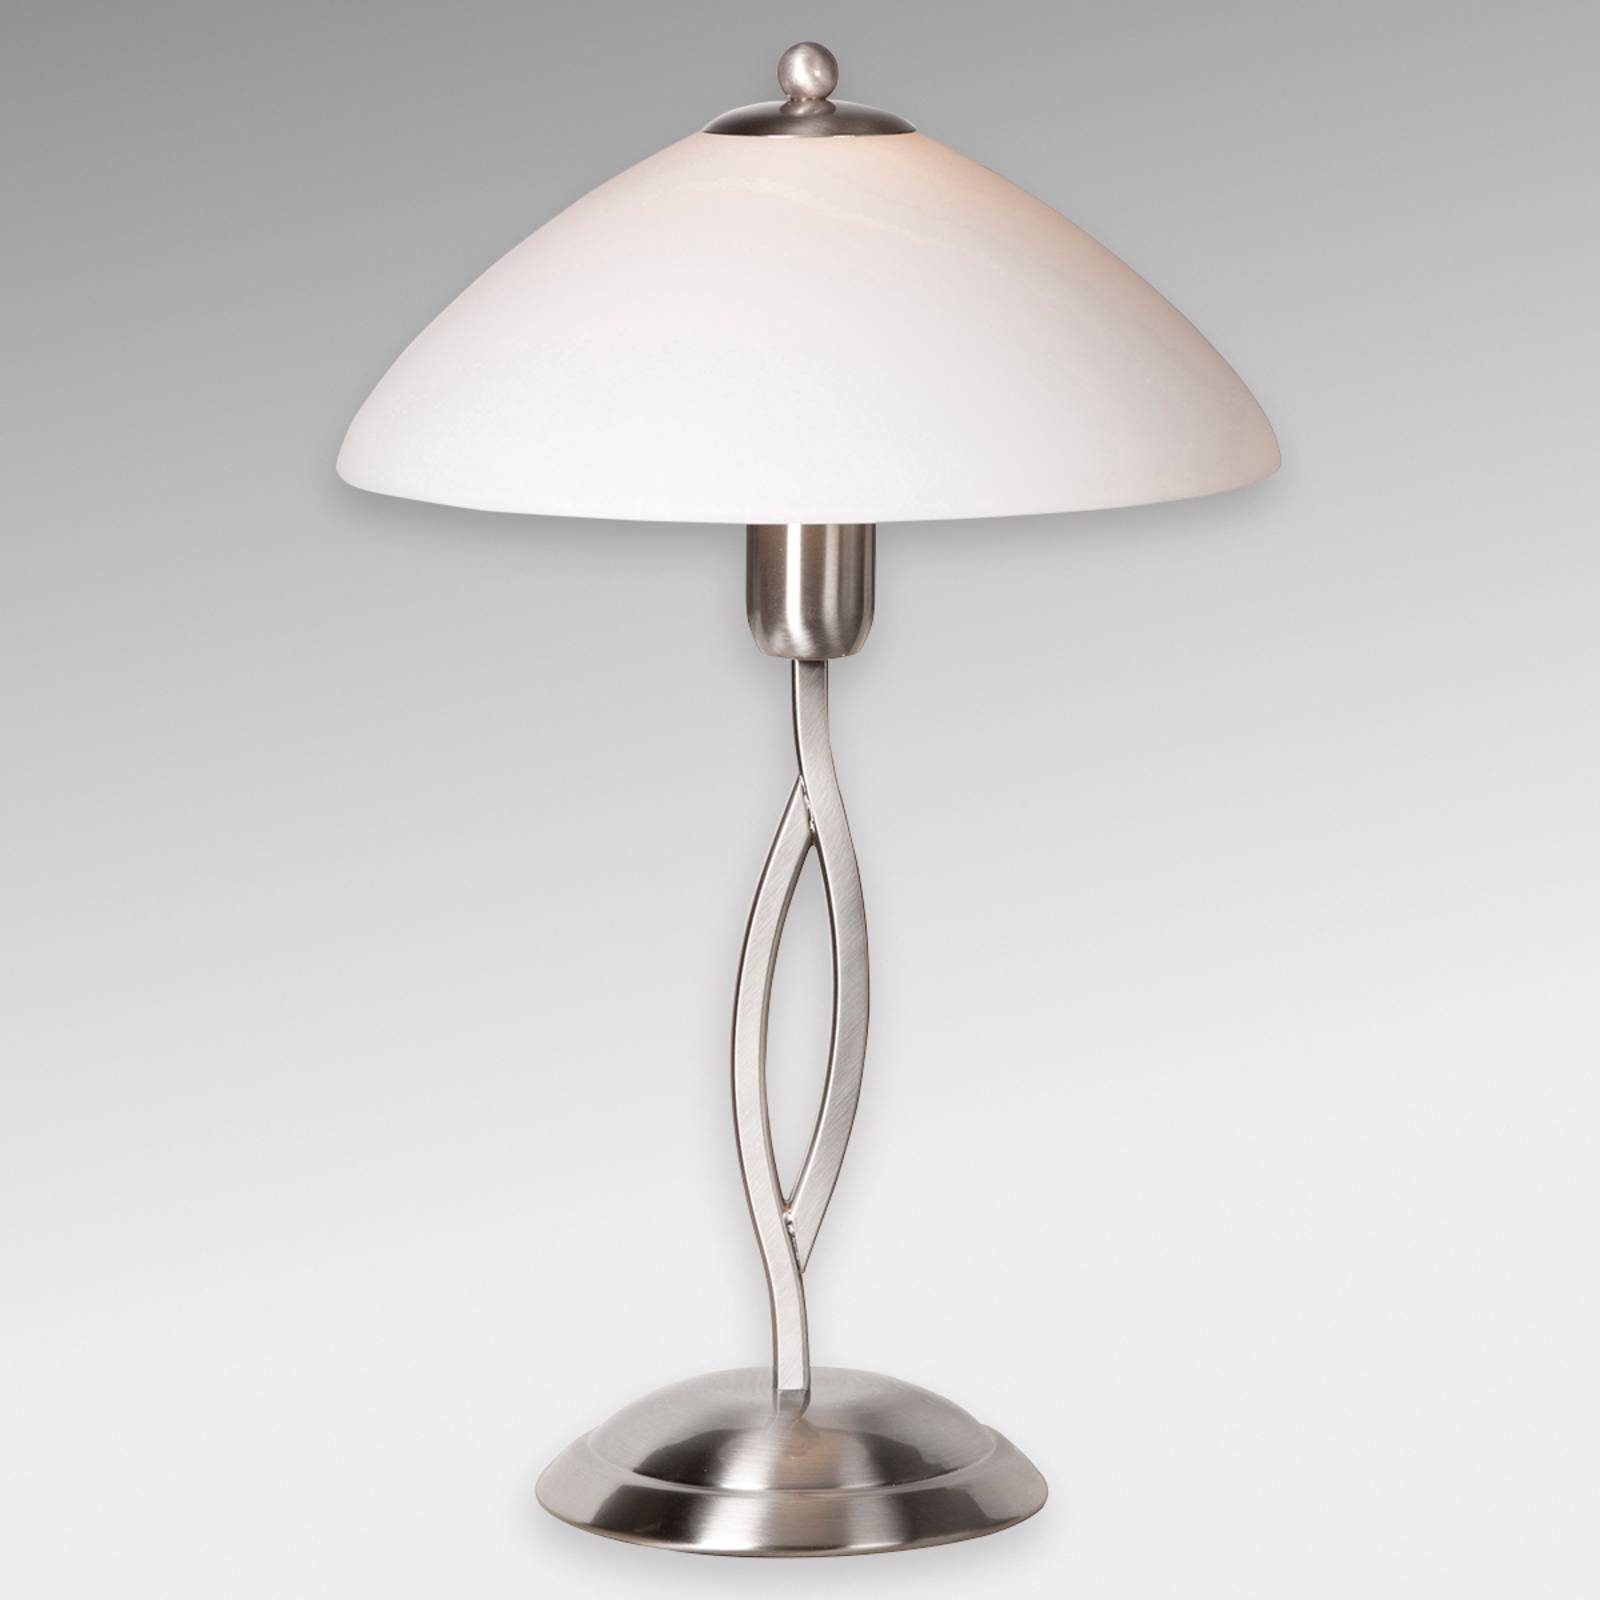 Asztali lámpa Capri magassága 45 cm acél/fehér